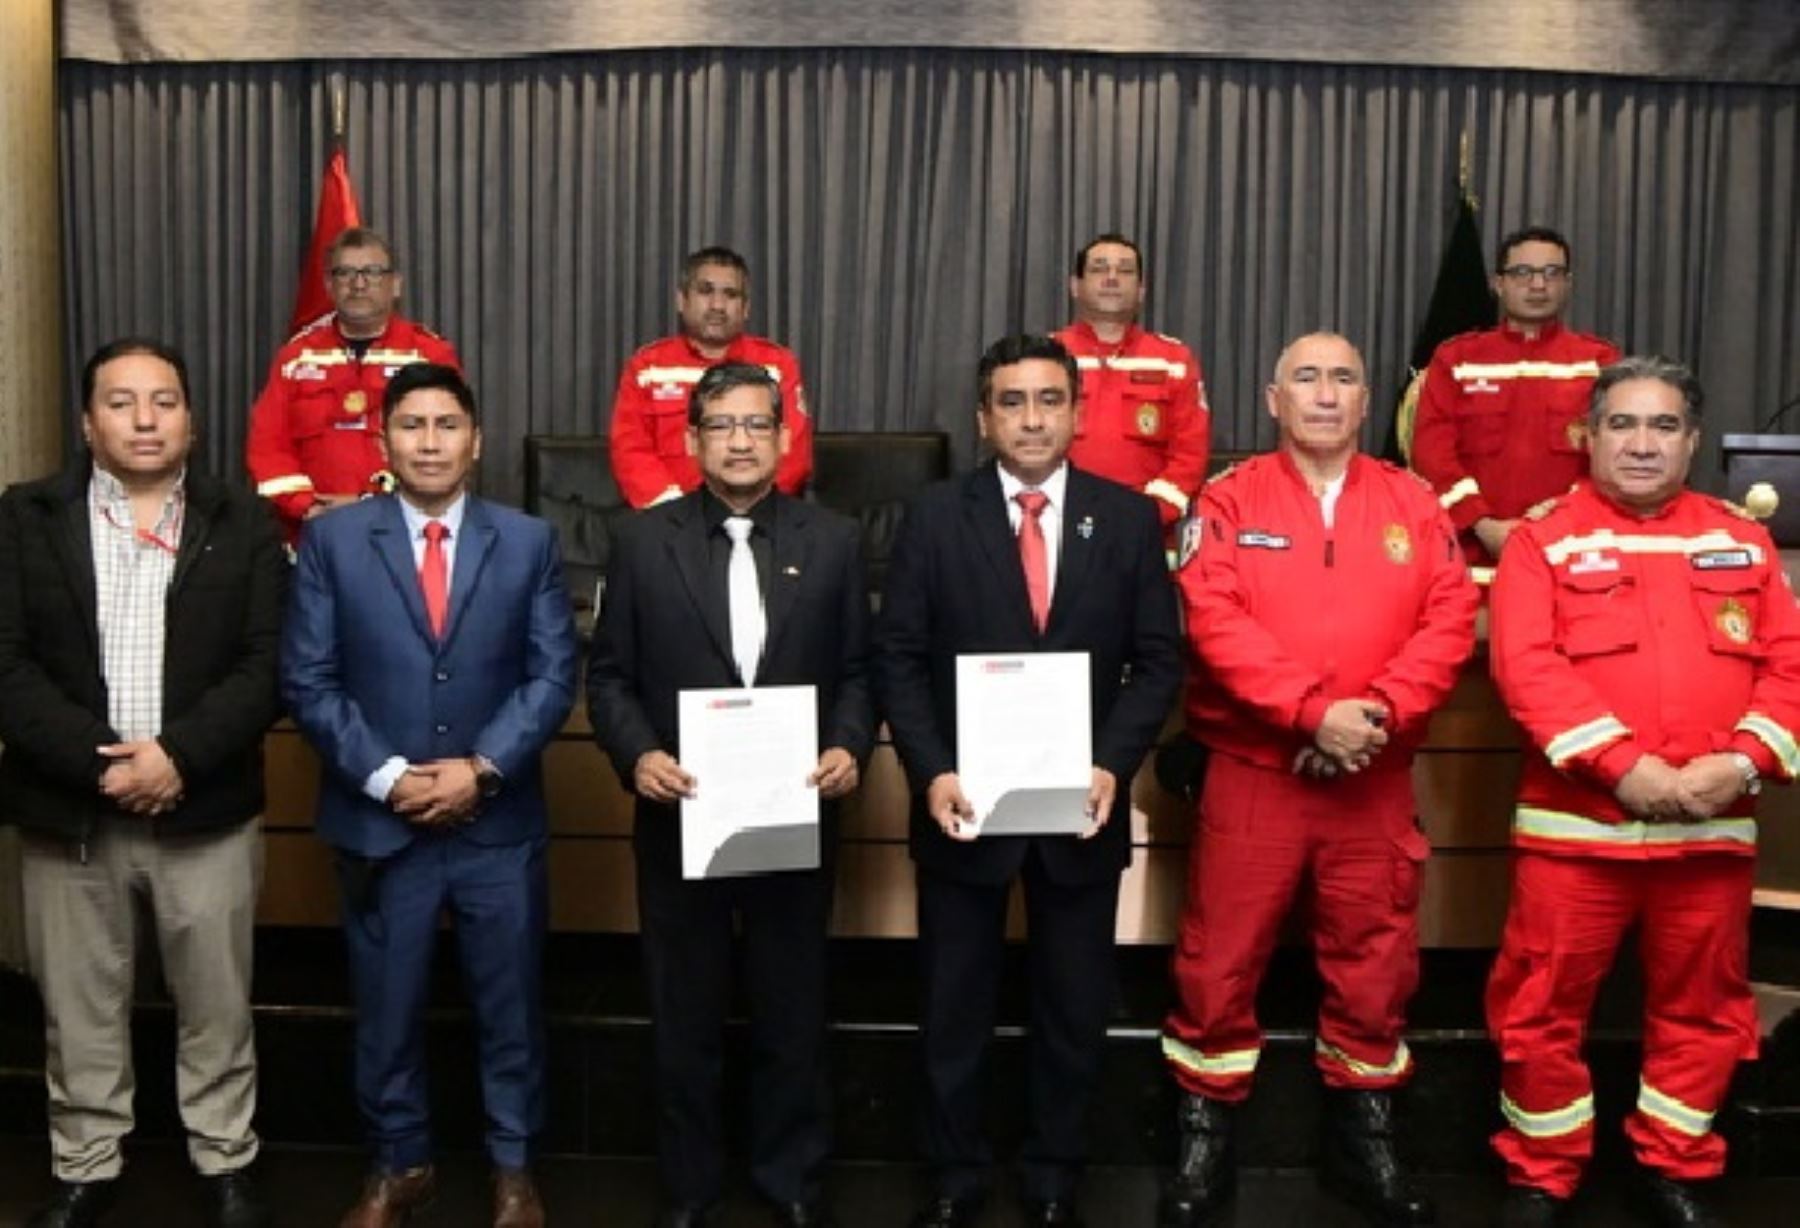 El Ministerio del Interior y la Caja Municipal de Huancayo firmaron un convenio para reconstruir y equipar la estación de bomberos de Huancayo, región Junín. ANDINA/Difusión